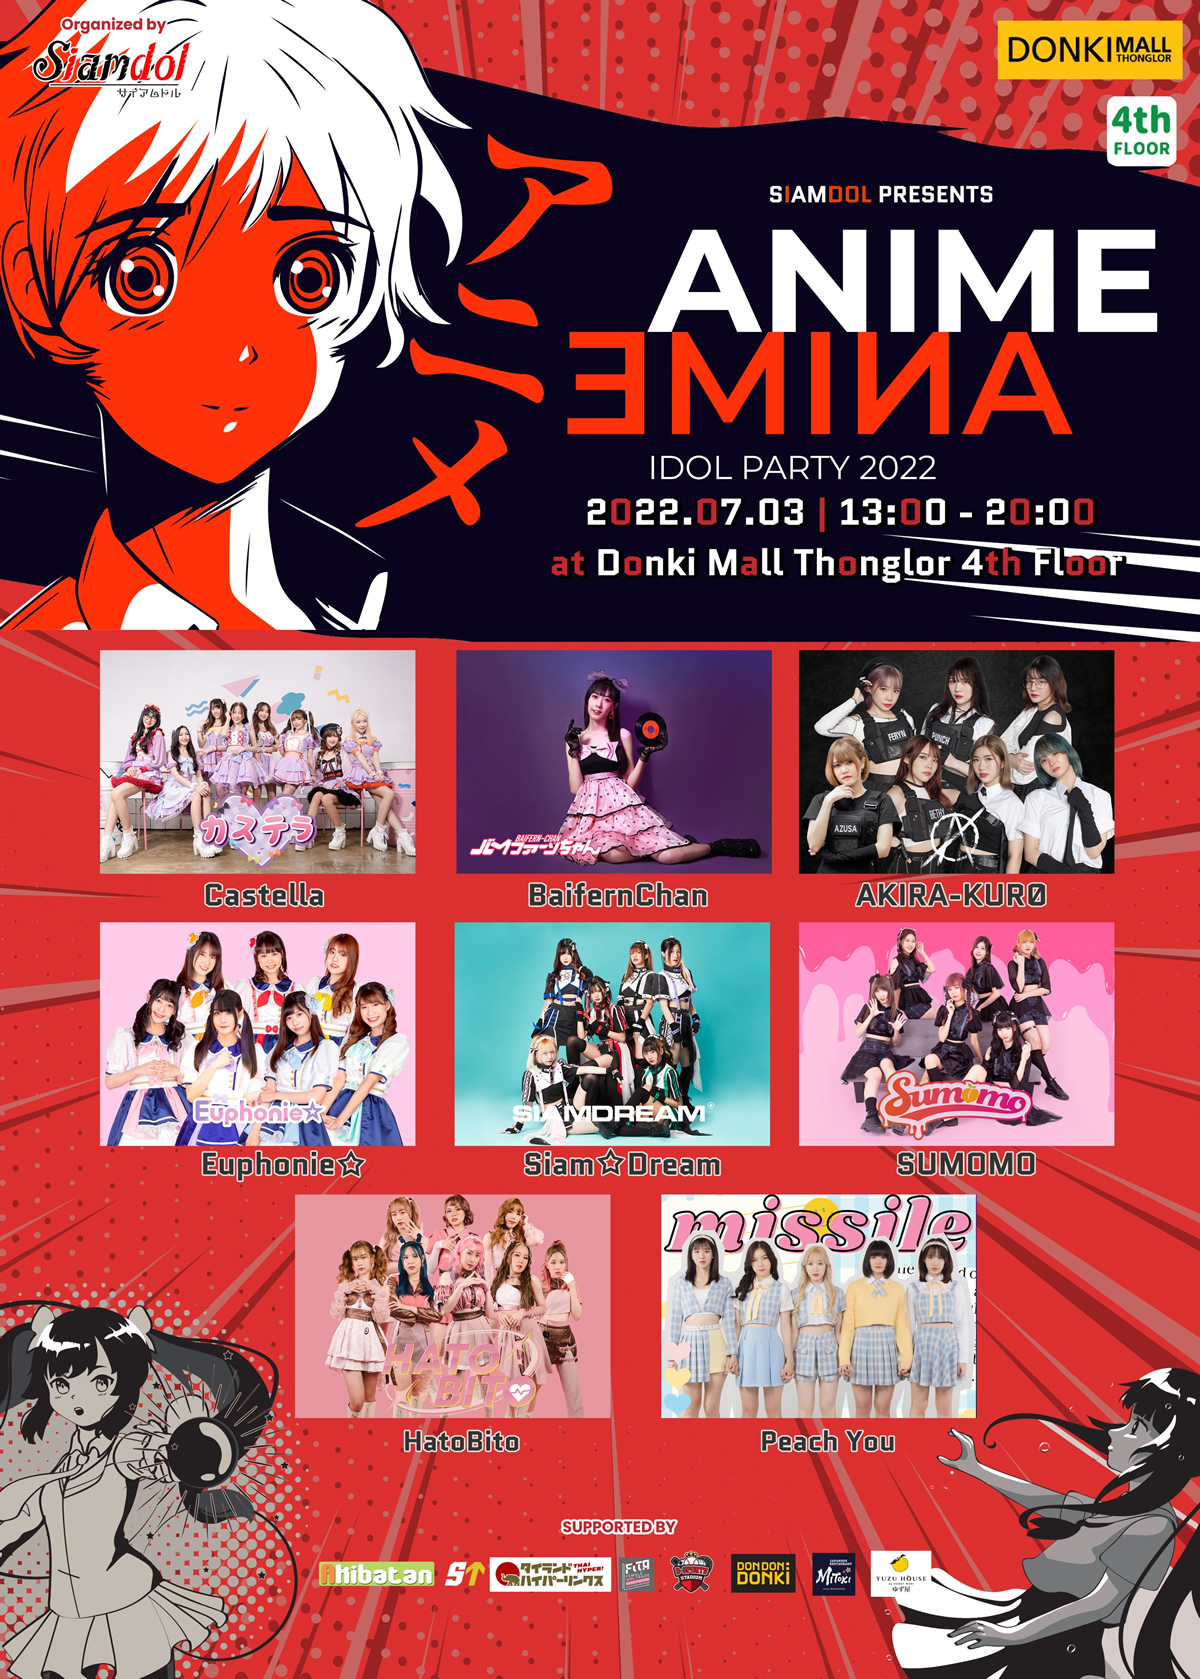 対バンライブ「アニメ アイドル パーティー」がドンキモール・トンローで7月3日(日)開催